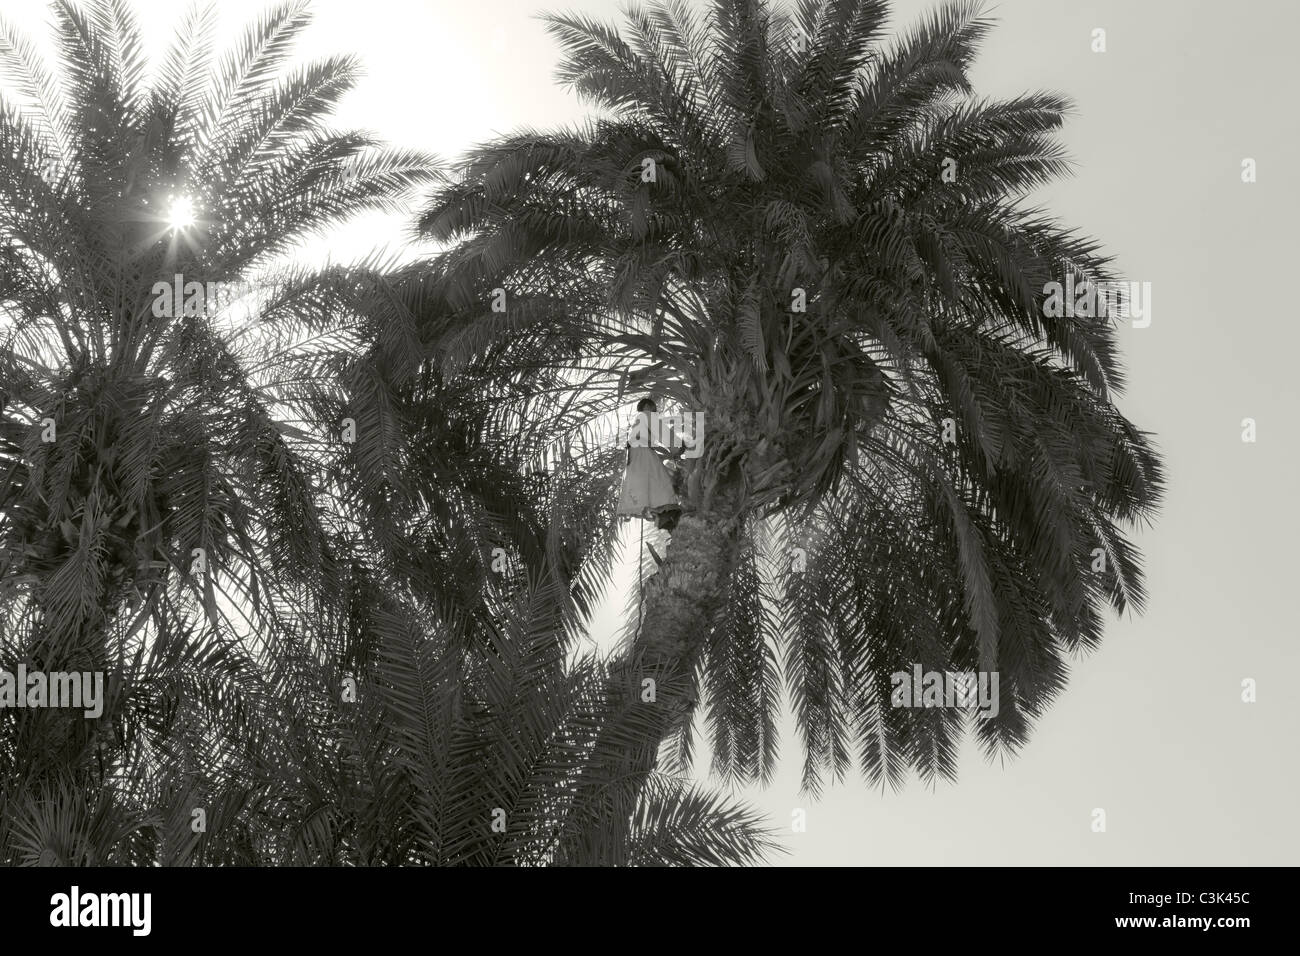 Immagine in bianco e nero di un artigiano locale cordata alla sommità di un albero di palma con un'ascia per tagliare e potare, Egitto, Africa Foto Stock